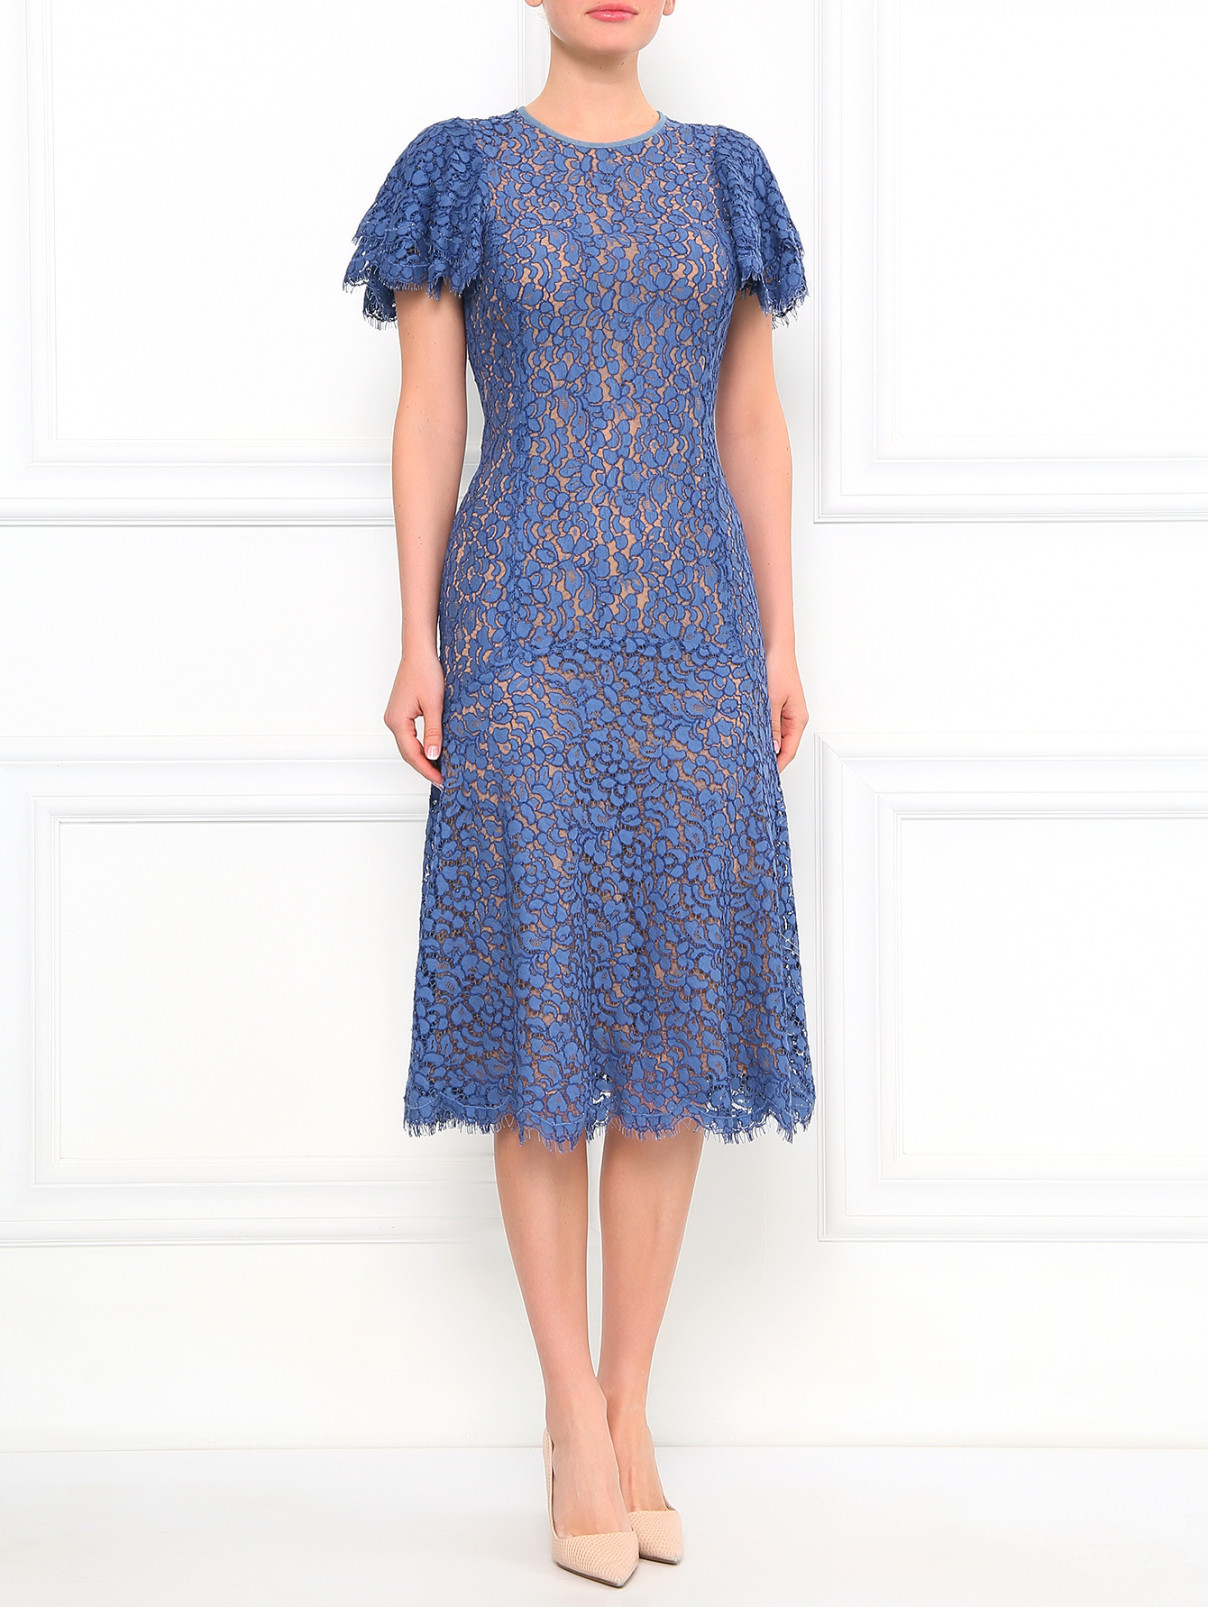 Платье-миди с кружевом Michael Kors  –  Модель Общий вид  – Цвет:  Синий